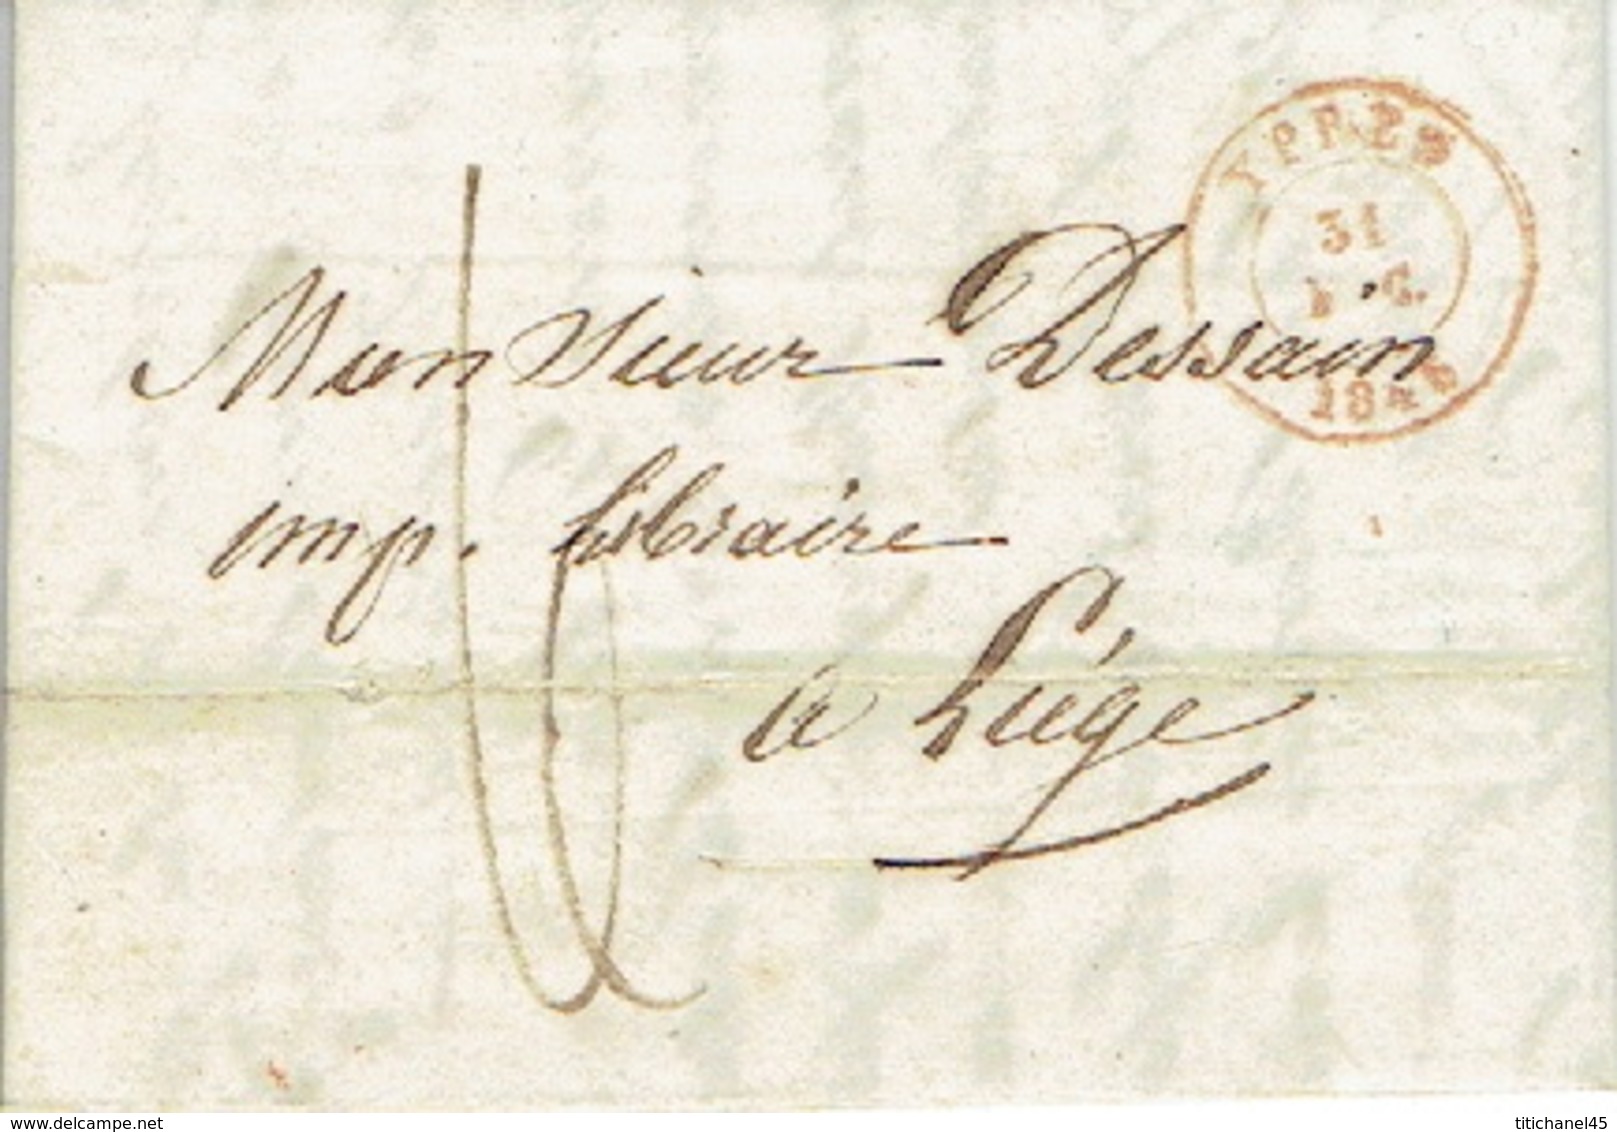 LAC  Du  31/12/1846 De YPRES Naar LIEGE H. DESSAIN Drukker - Getekent LAMBIN VERWAERT Drukker Te IEPER - 1830-1849 (Belgique Indépendante)